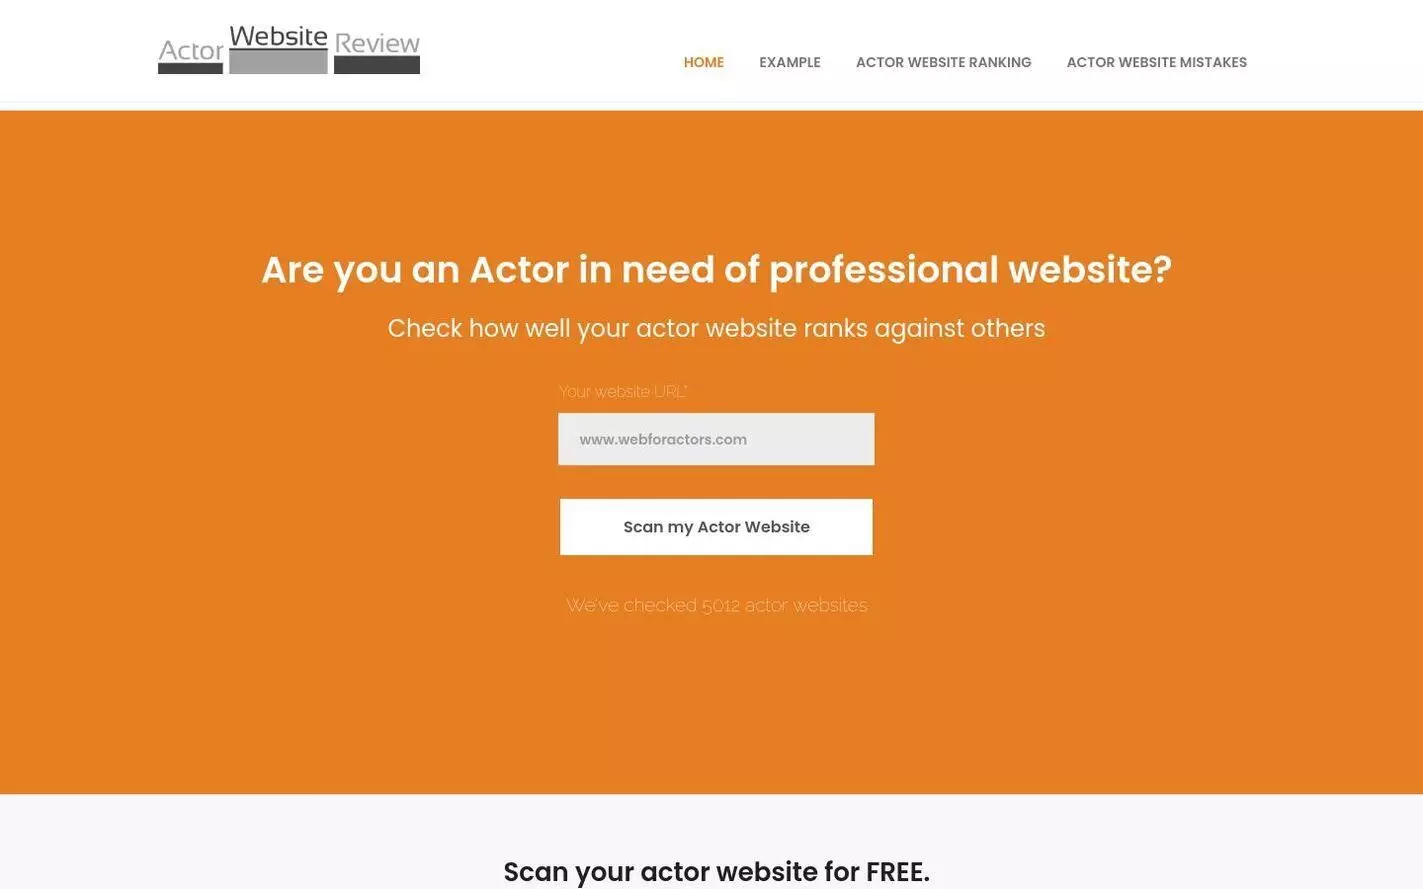 Actor Website Review